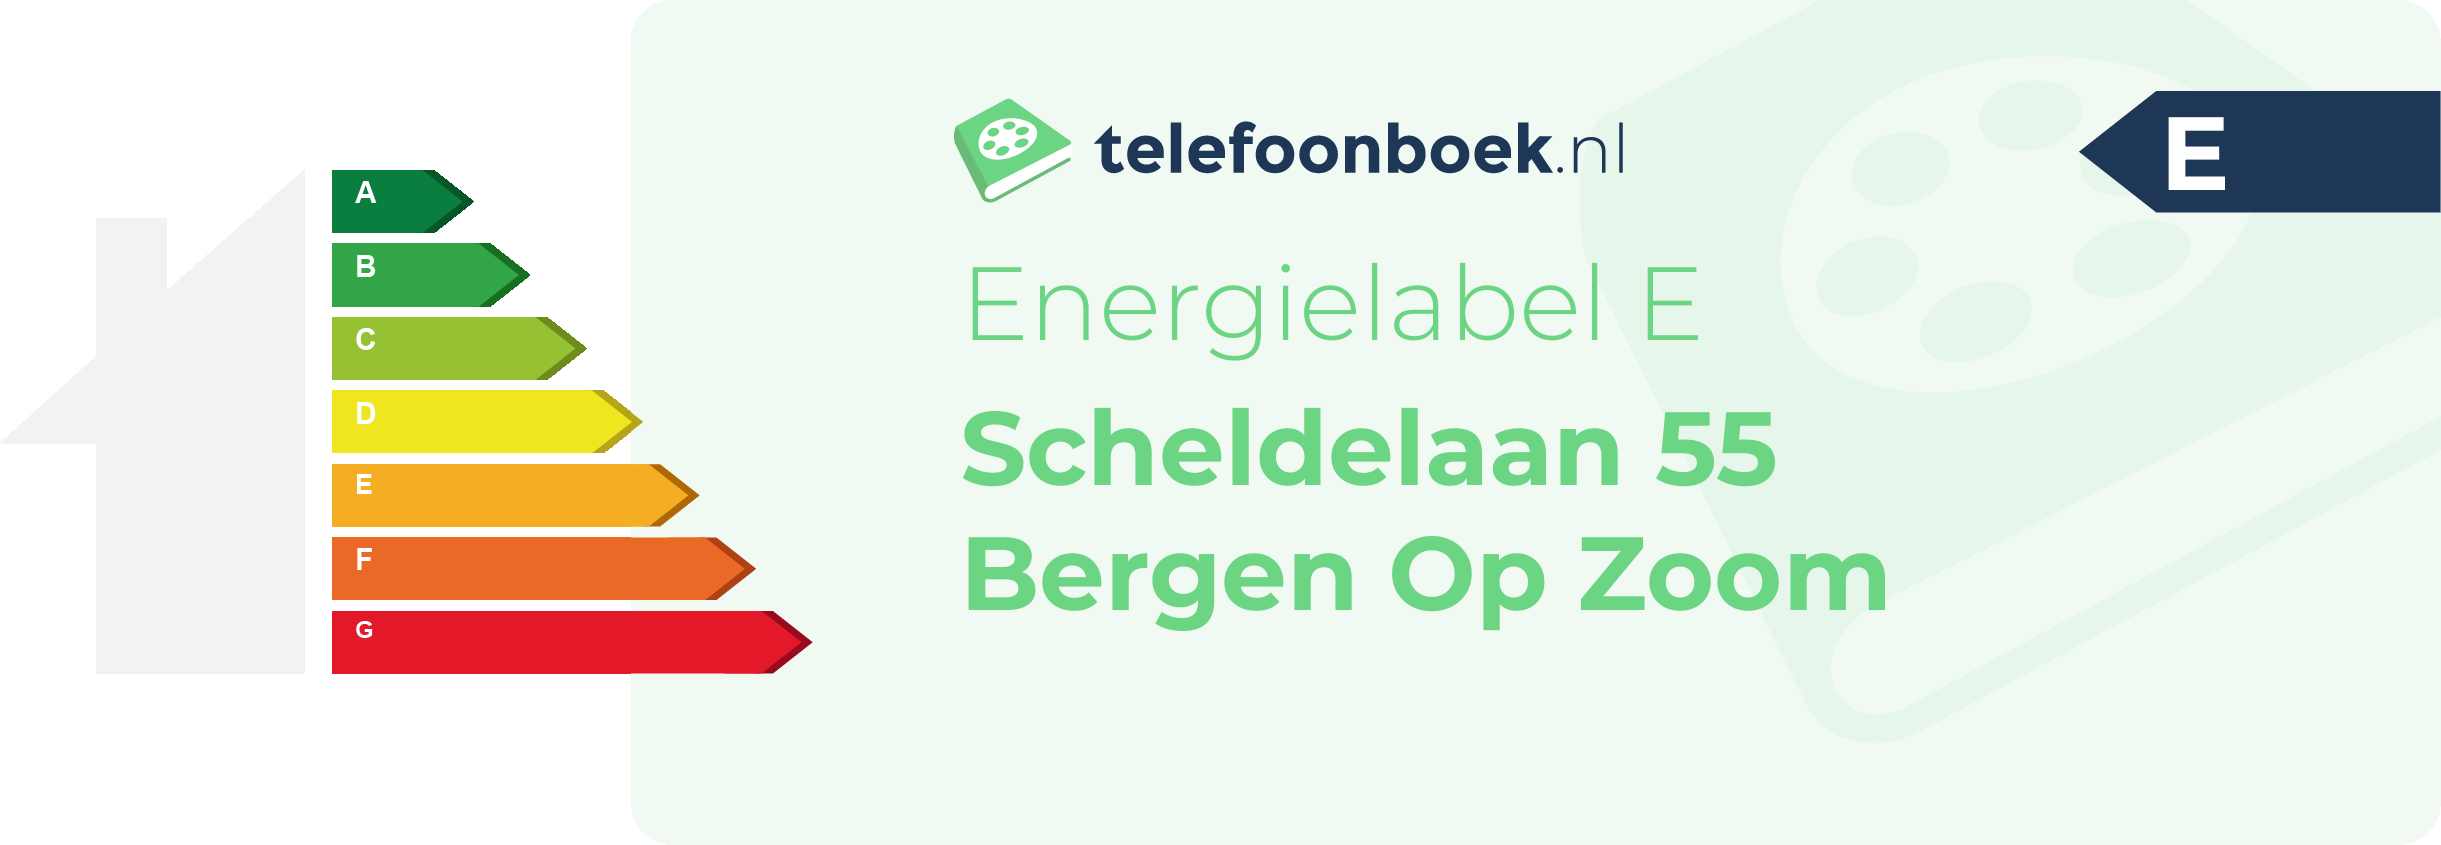 Energielabel Scheldelaan 55 Bergen Op Zoom